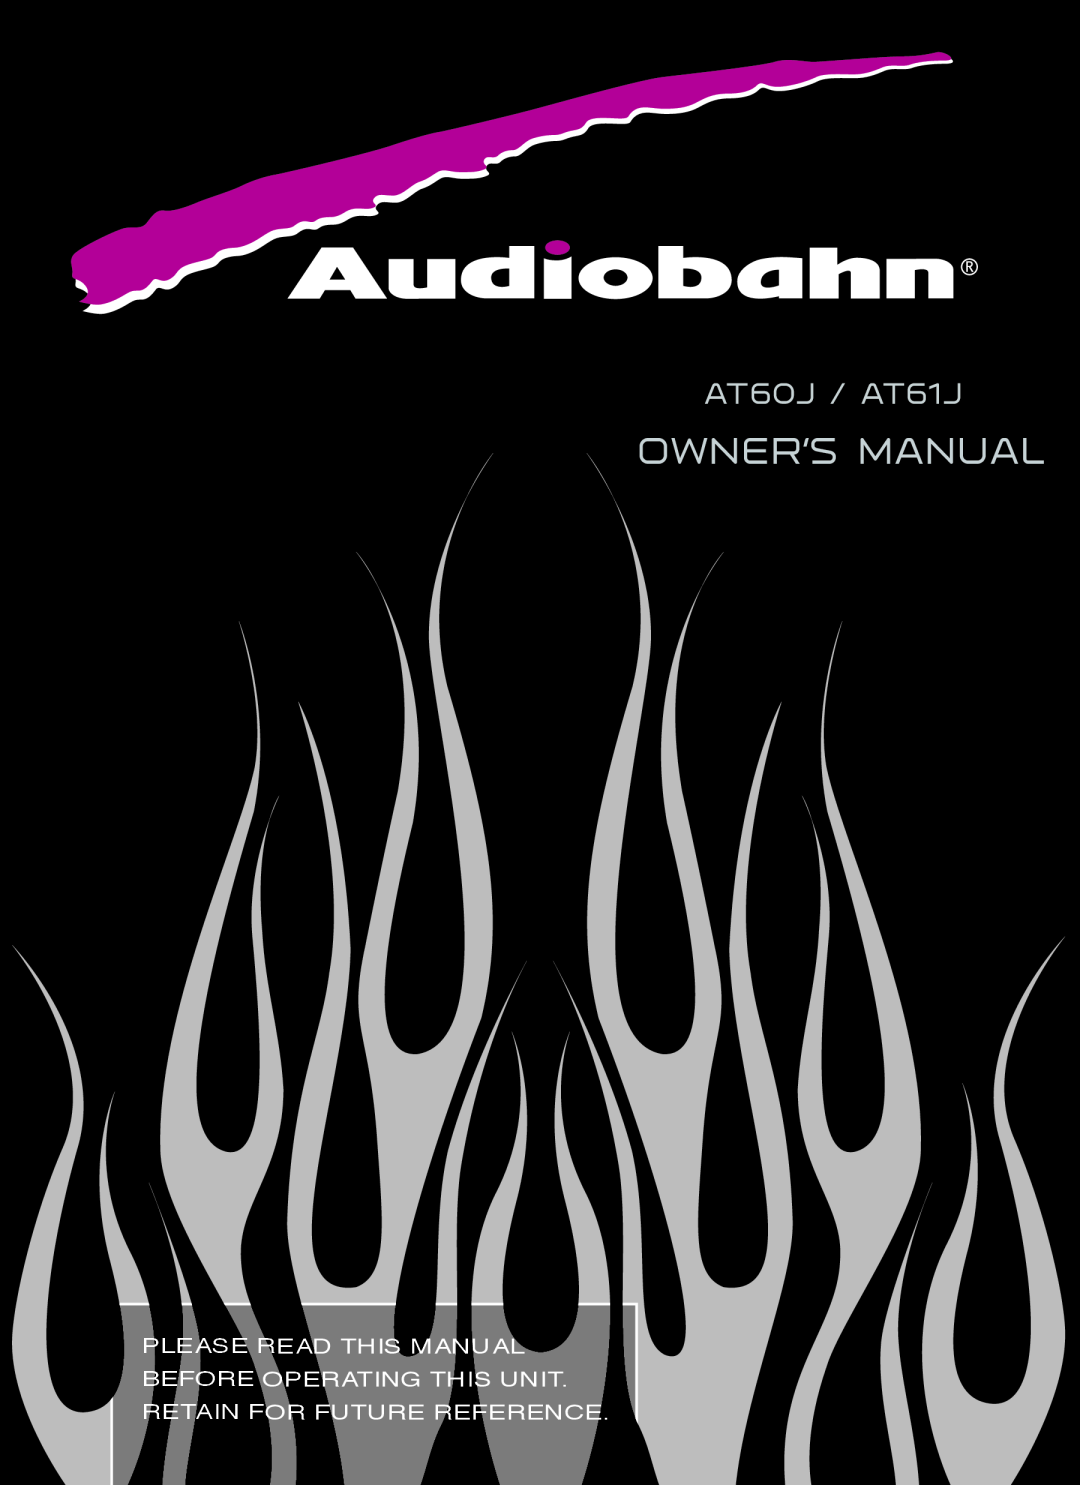 AudioBahn owner manual Owner’S Manual, AT60J / AT61J 